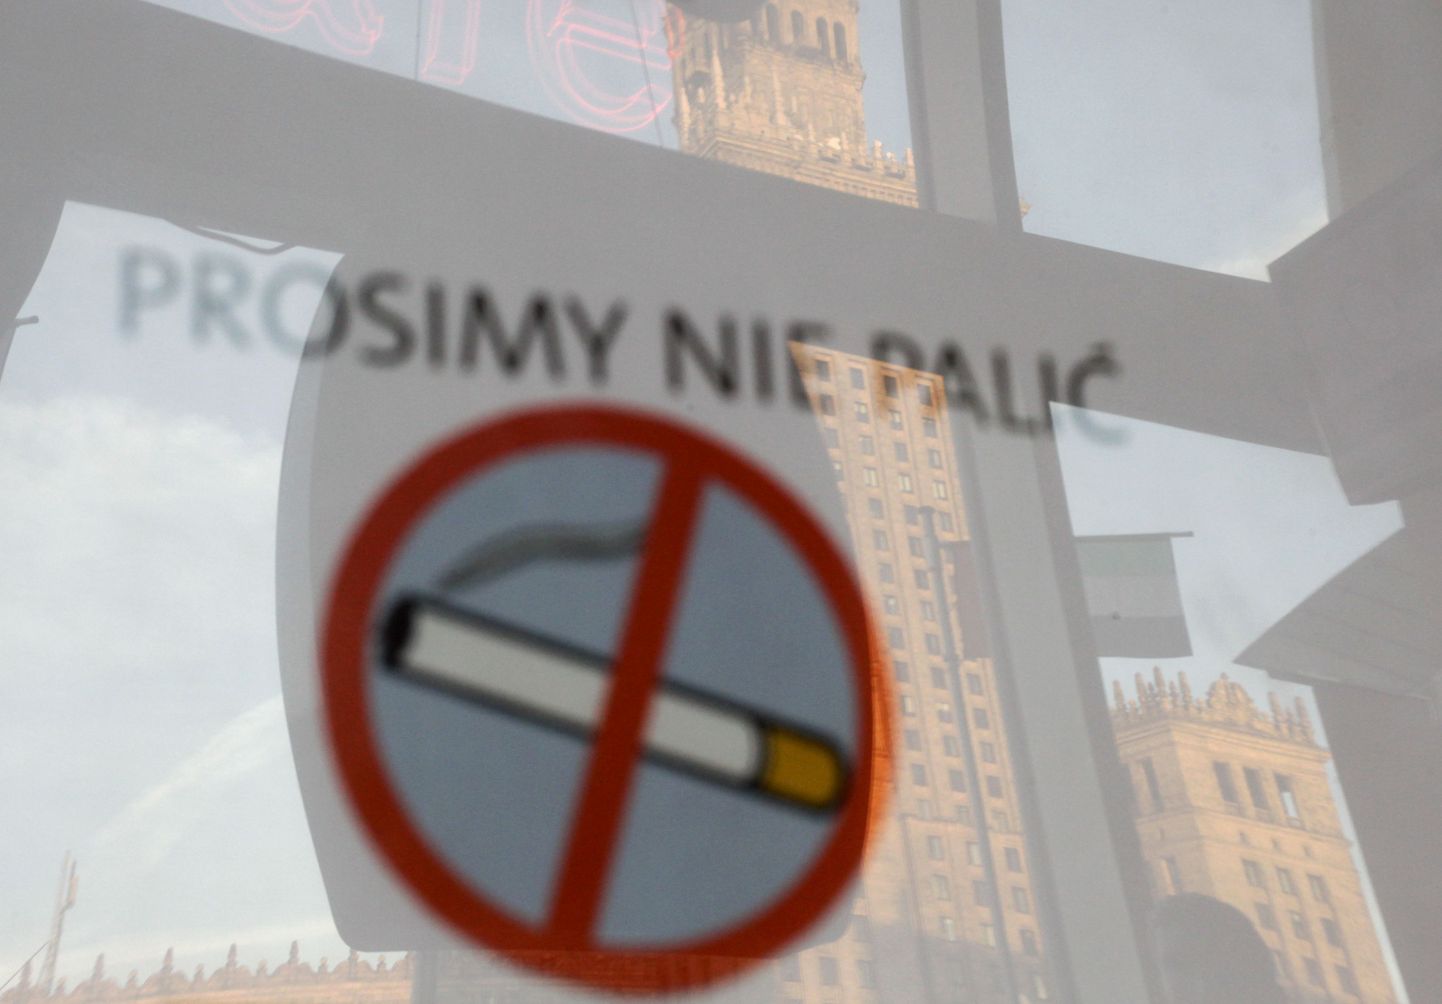 Poolas keelati avalikes kohtades suitsetamine